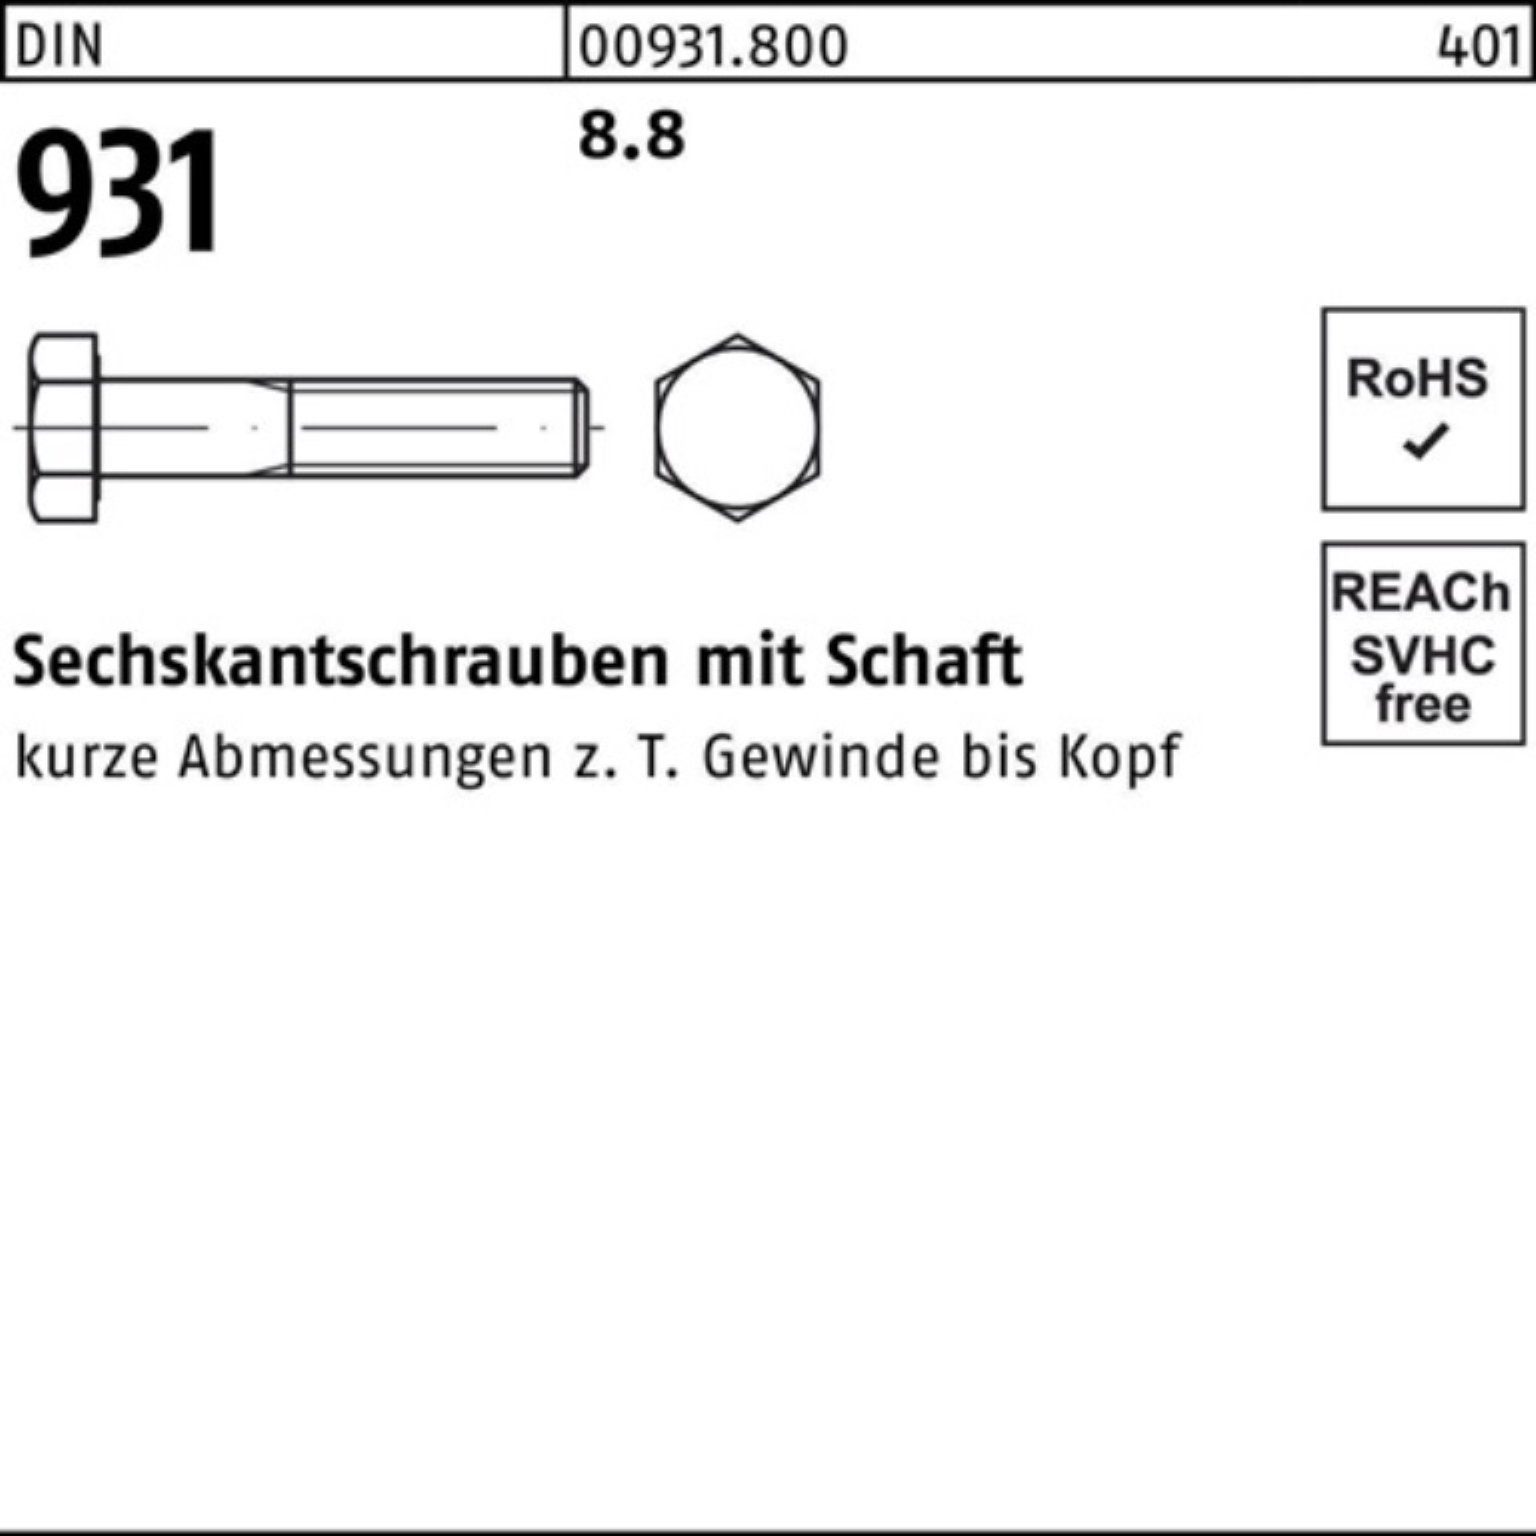 Reyher Sechskantschraube 100er Pack Sechskantschraube 200 M39x 1 Schaft DIN 8.8 Stück 931 DIN